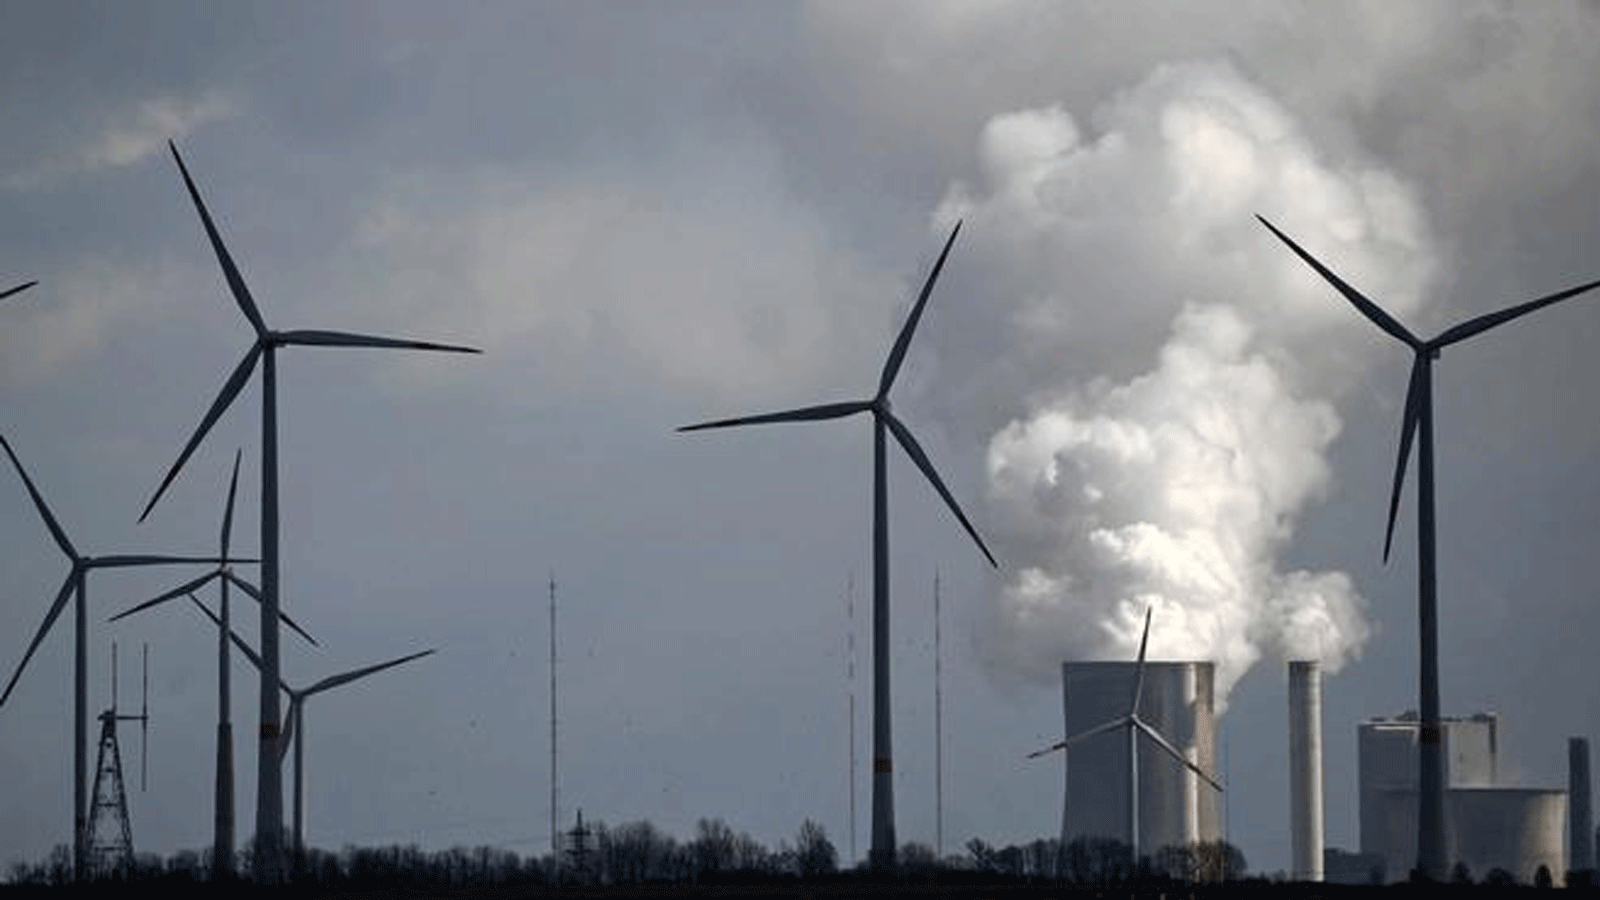 شركة الطاقة العملاقة RWE تقوم بتشغيل محطة طاقة تعمل بالفحم، بالإضافة إلى توربينات الرياح في شمال الراين وستفاليا